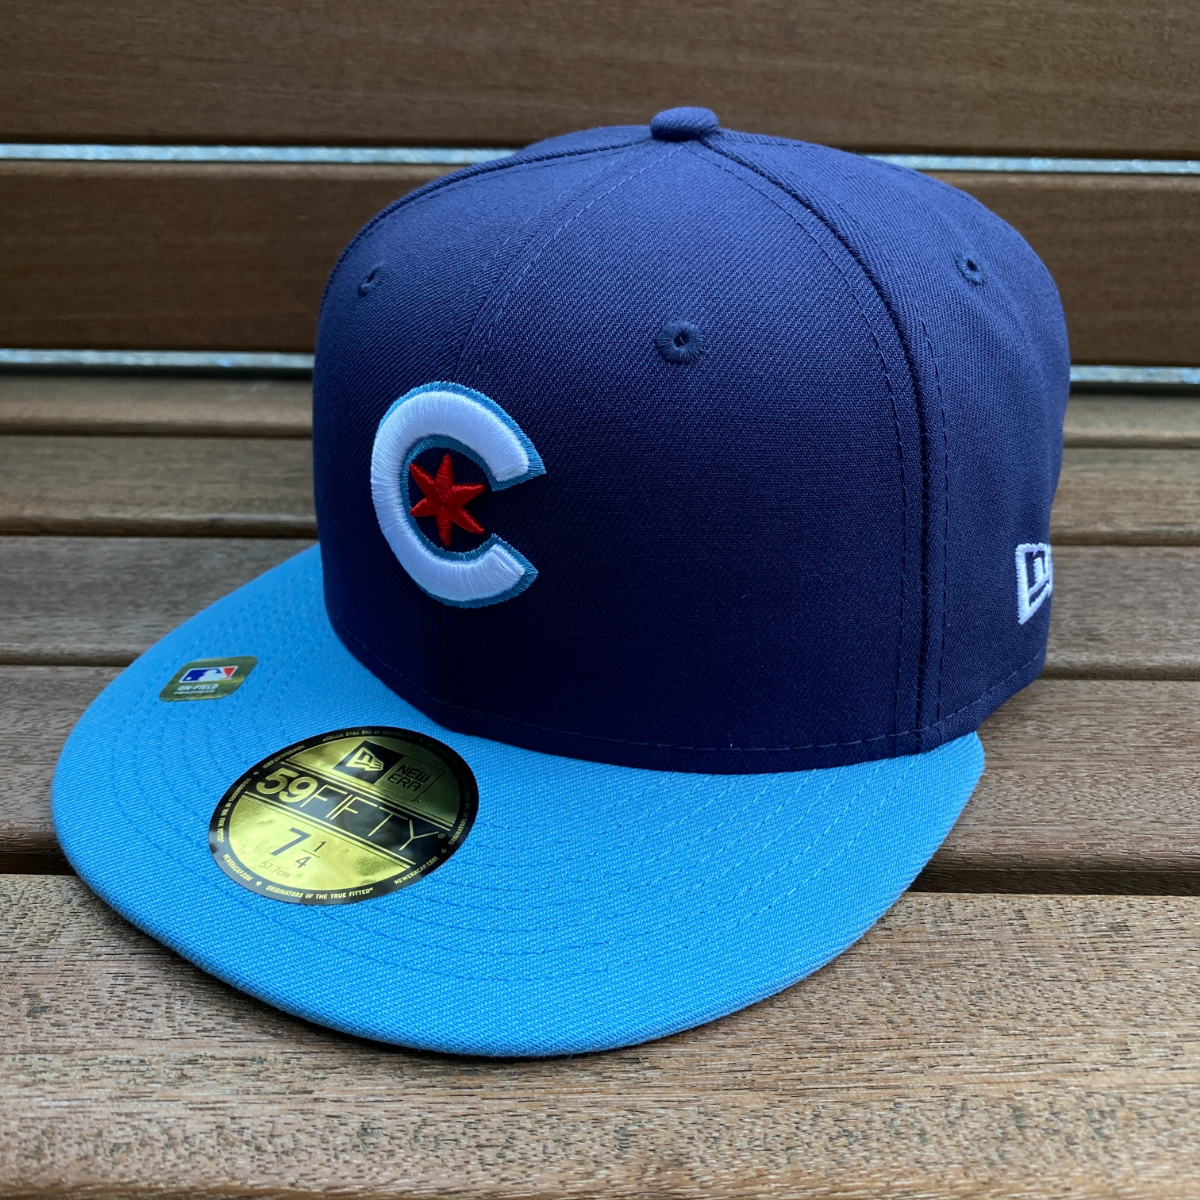 限定モデル 【7.5/8】 NEWERA ニューエラ MLB シカゴ カブス Chicago Cubs シティコネクト City Connect 59FIFTY 米国正規品 メジャー